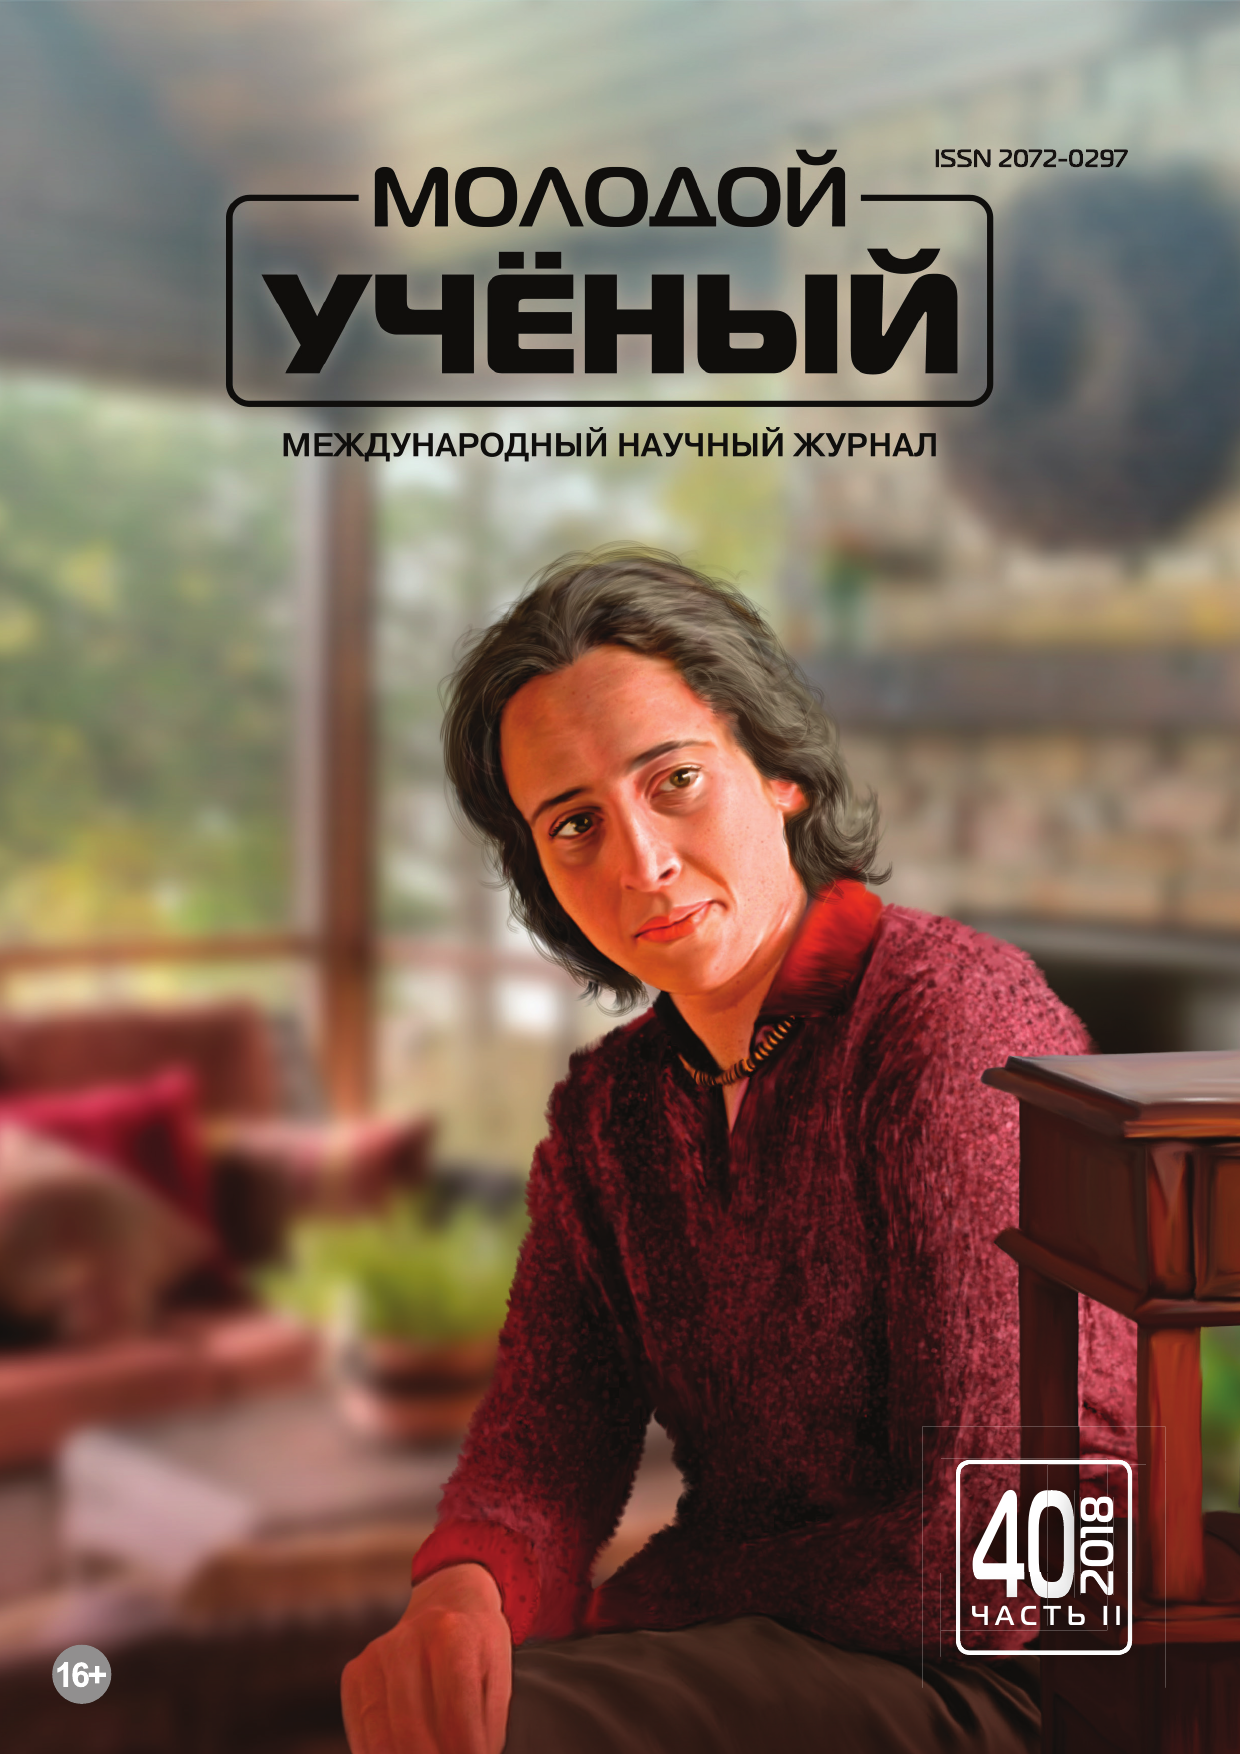 Moluch ru archive. Издательство молодой ученый. Журнал молодой ученый 2018. Moluch.